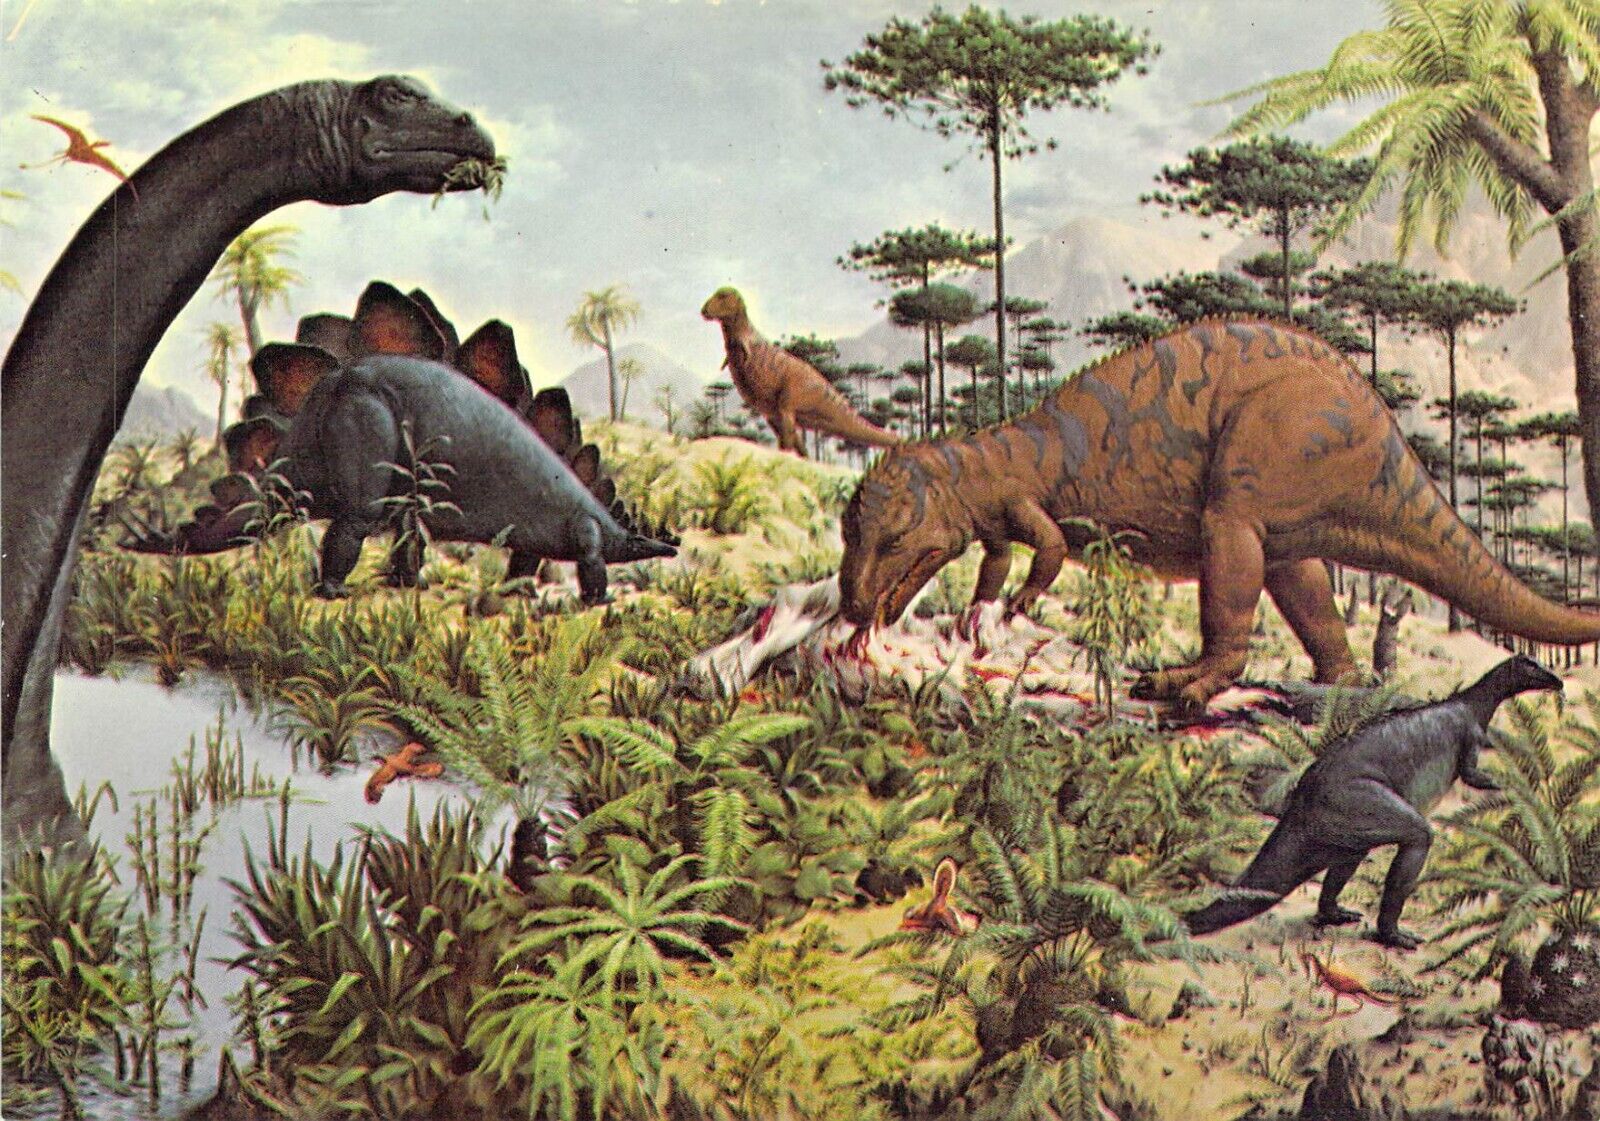 1977 Peabody #4  Museum Reptiles Mural 3 Dinosaurs 4x6 postcard L157